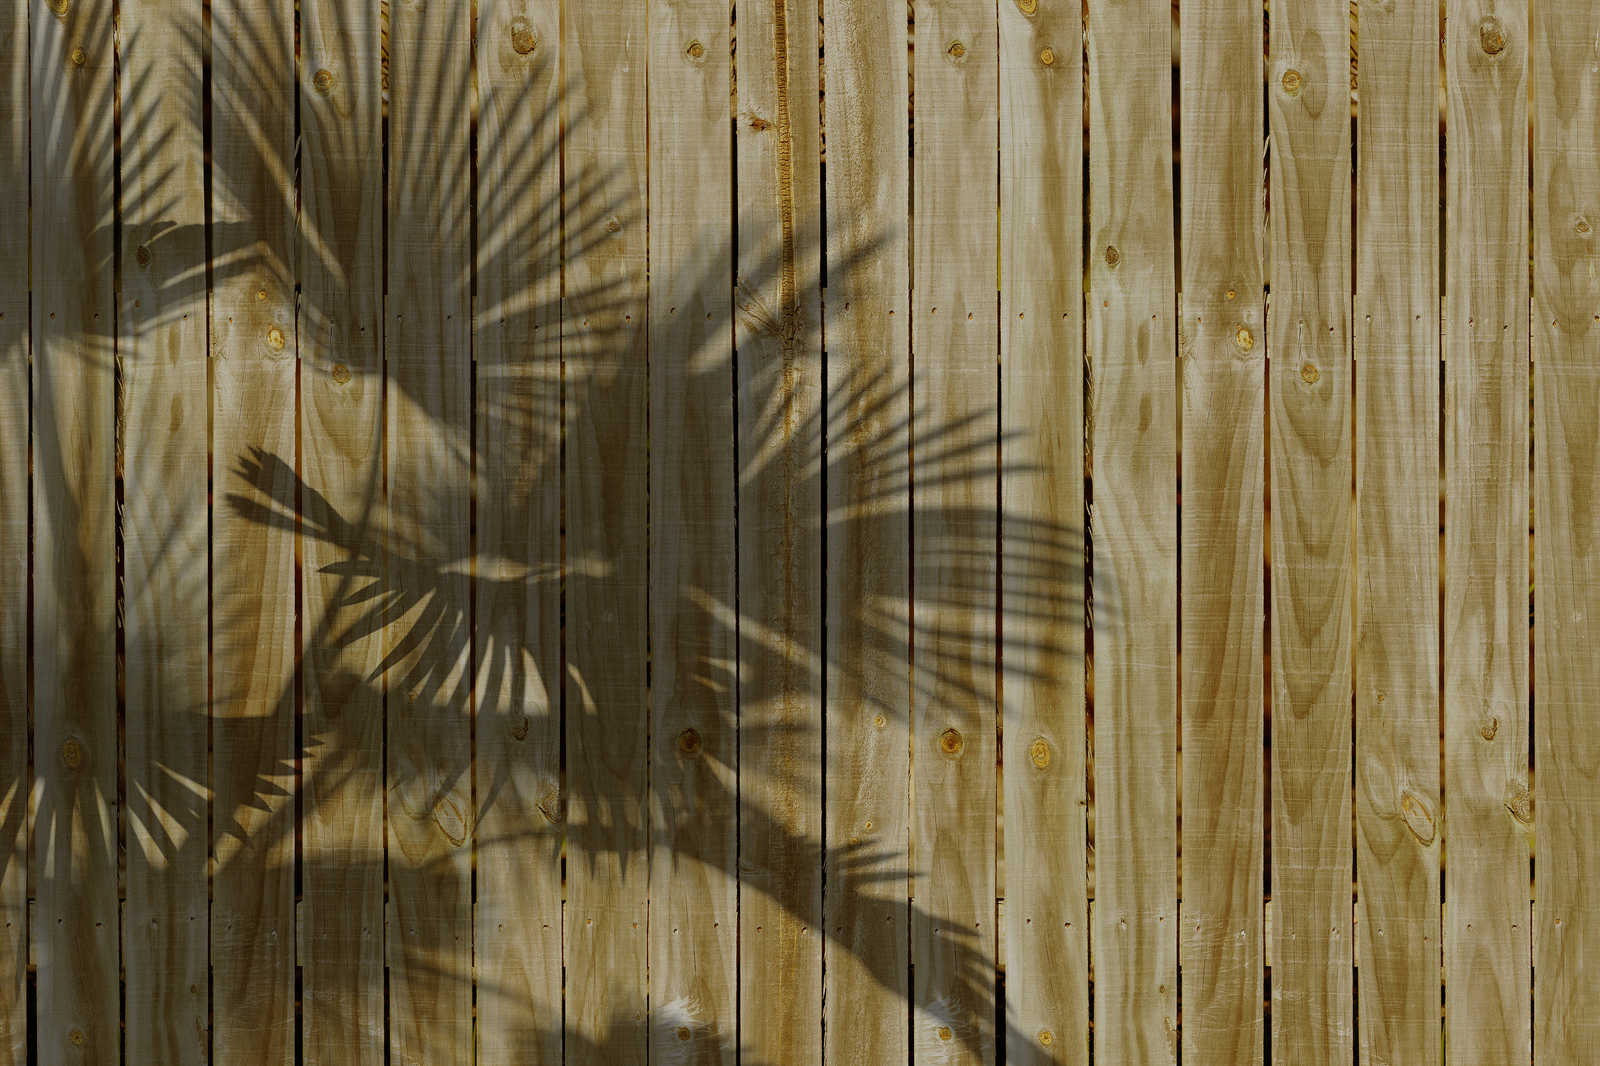             Toile imitation bois et ombre de feuille de palmier - 0,90 m x 0,60 m
        